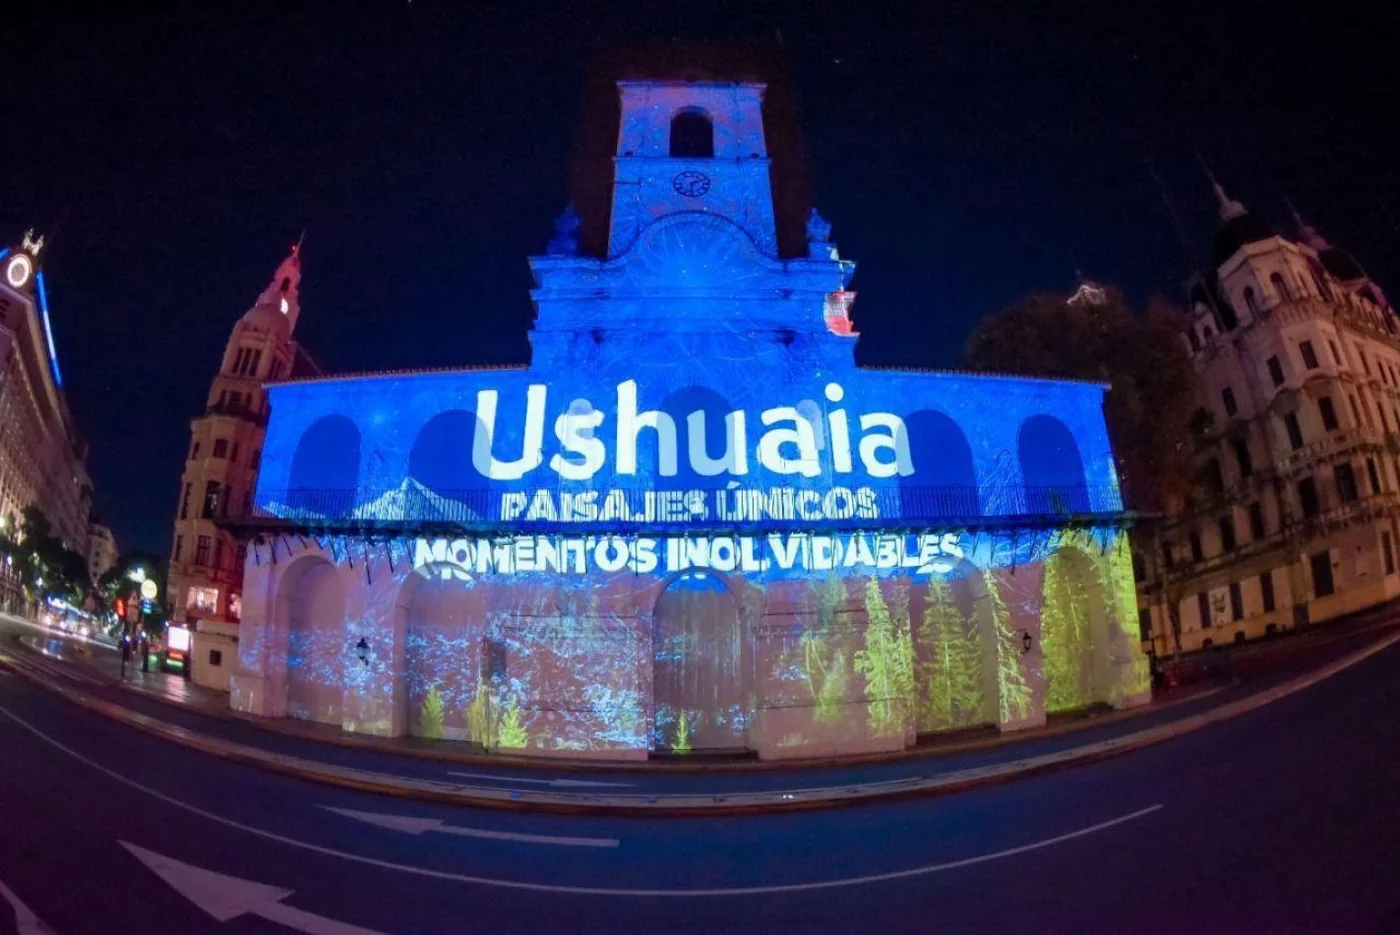 La ocupación hotelera alcanza el 94,8% promedio en Ushuaia